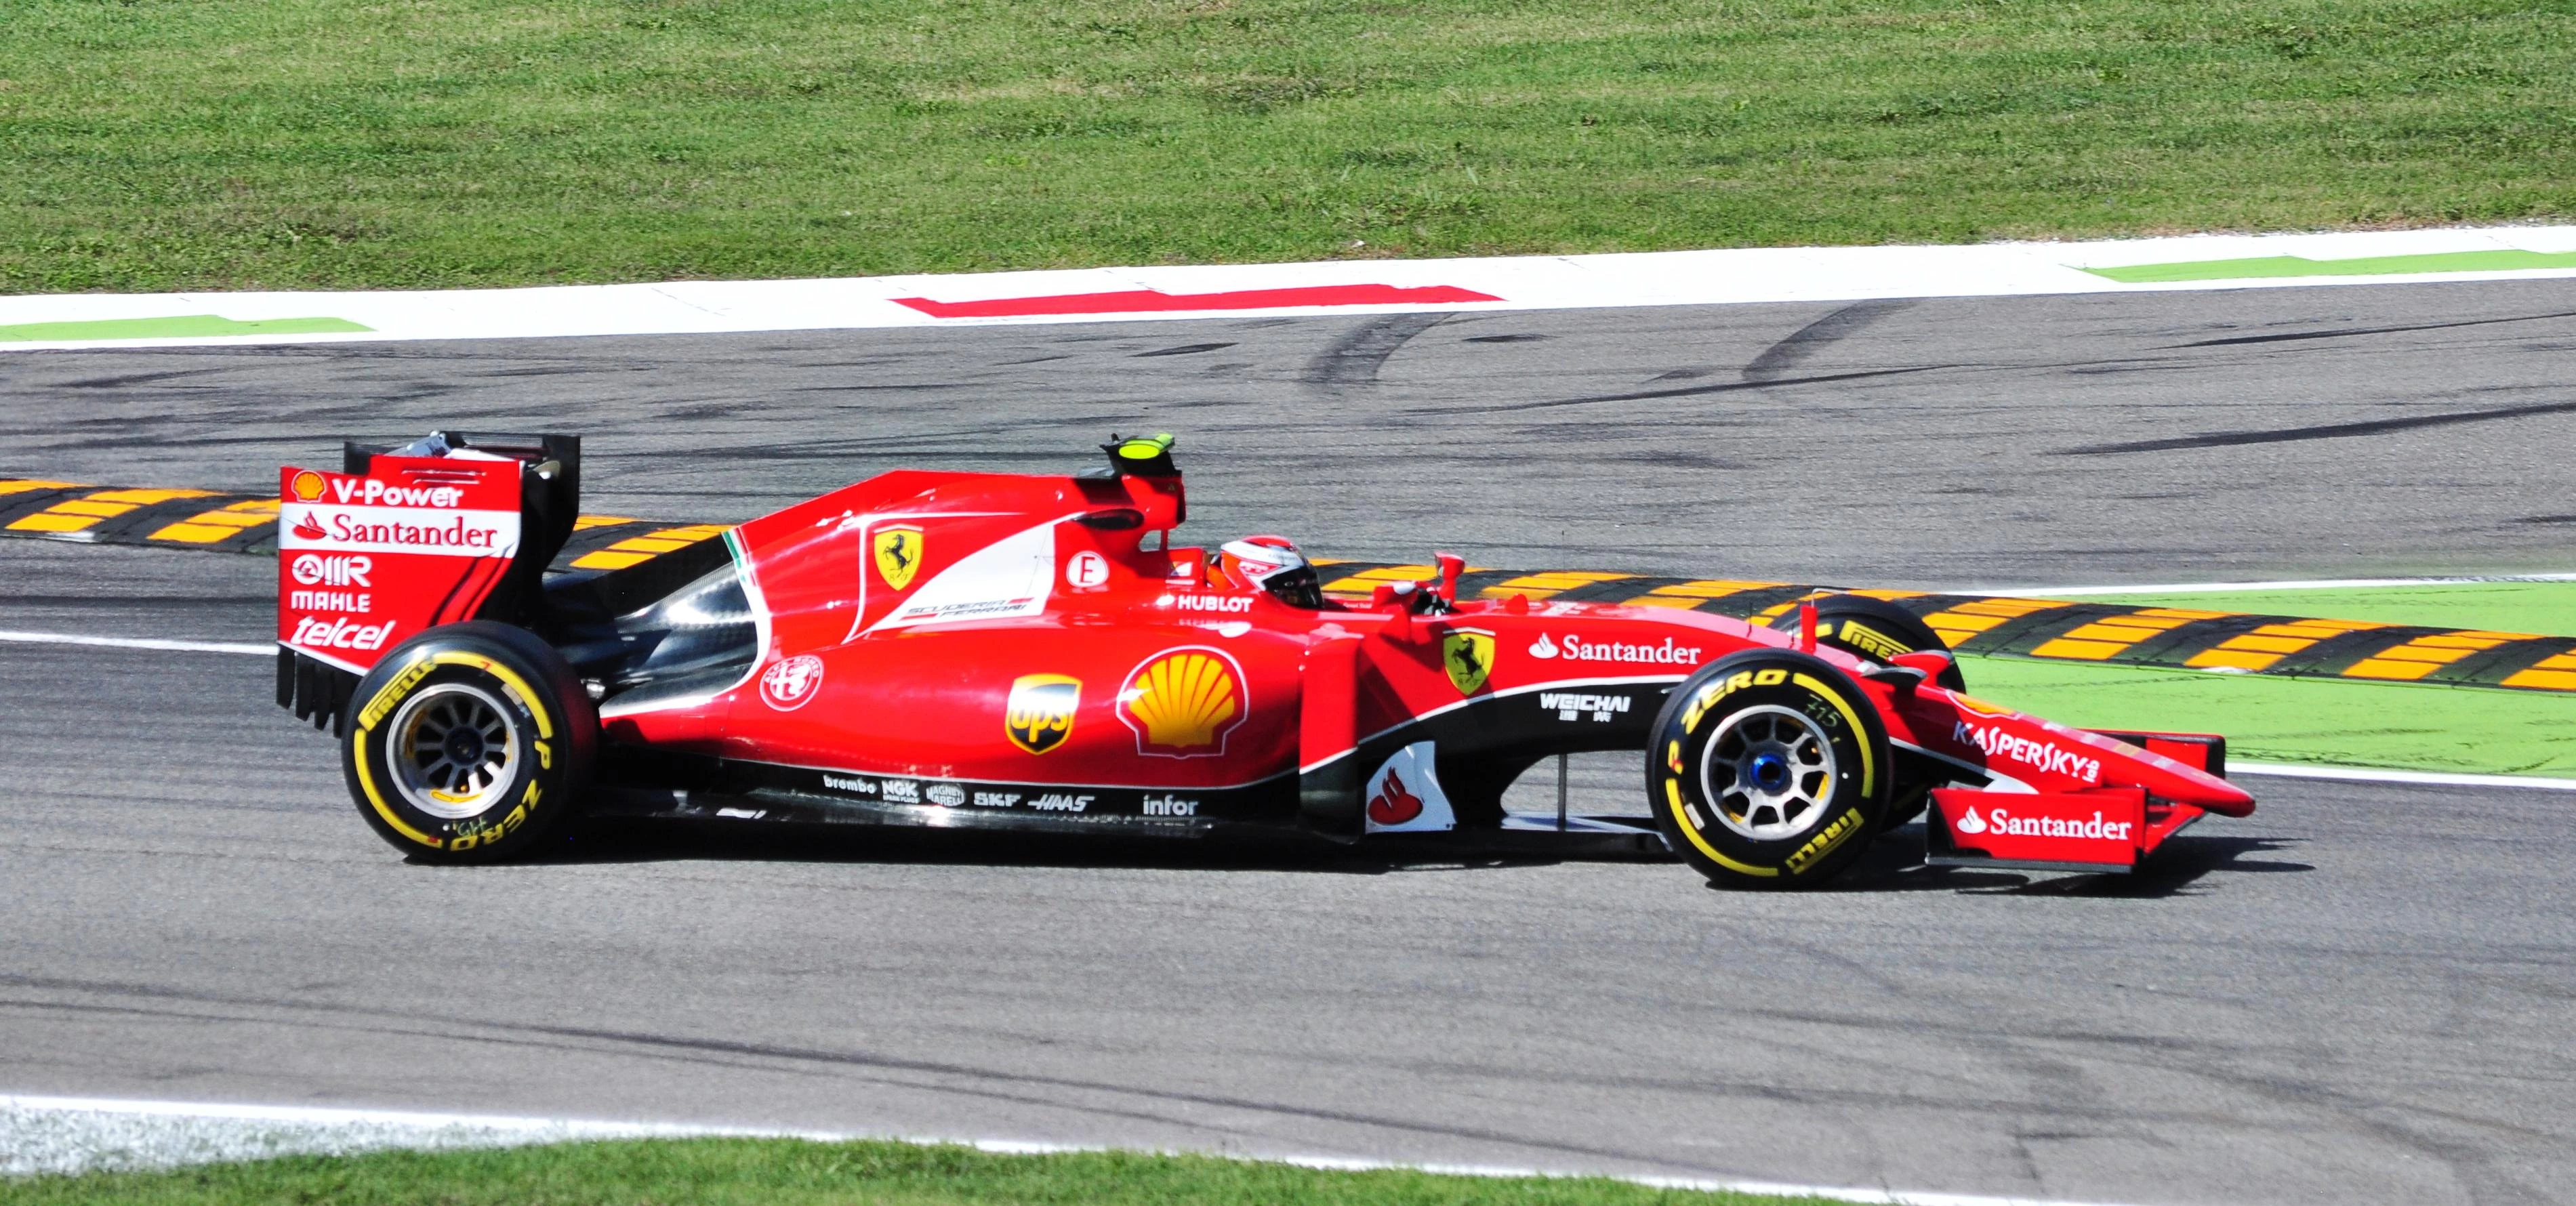 Kimi Räikkönen qualifies second